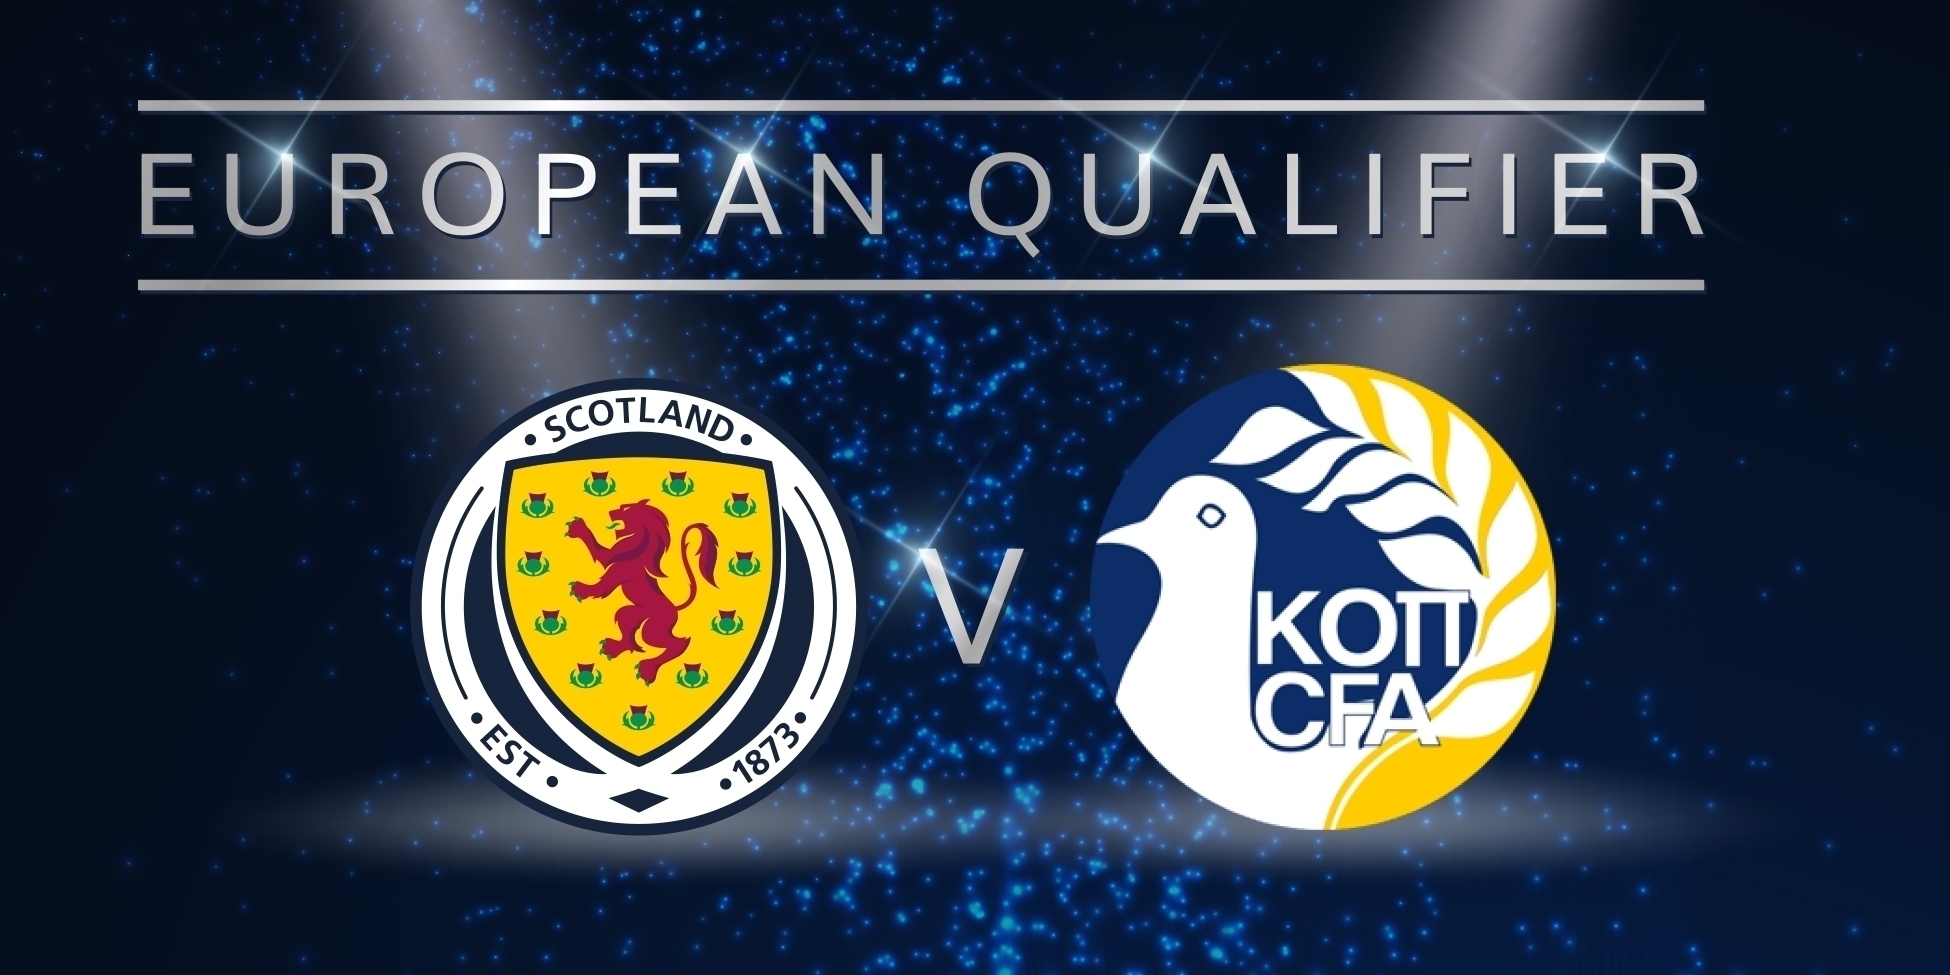 Soi kèo, nhận định Scotland vs Cyprus 01h45 ngày 09/06/2019